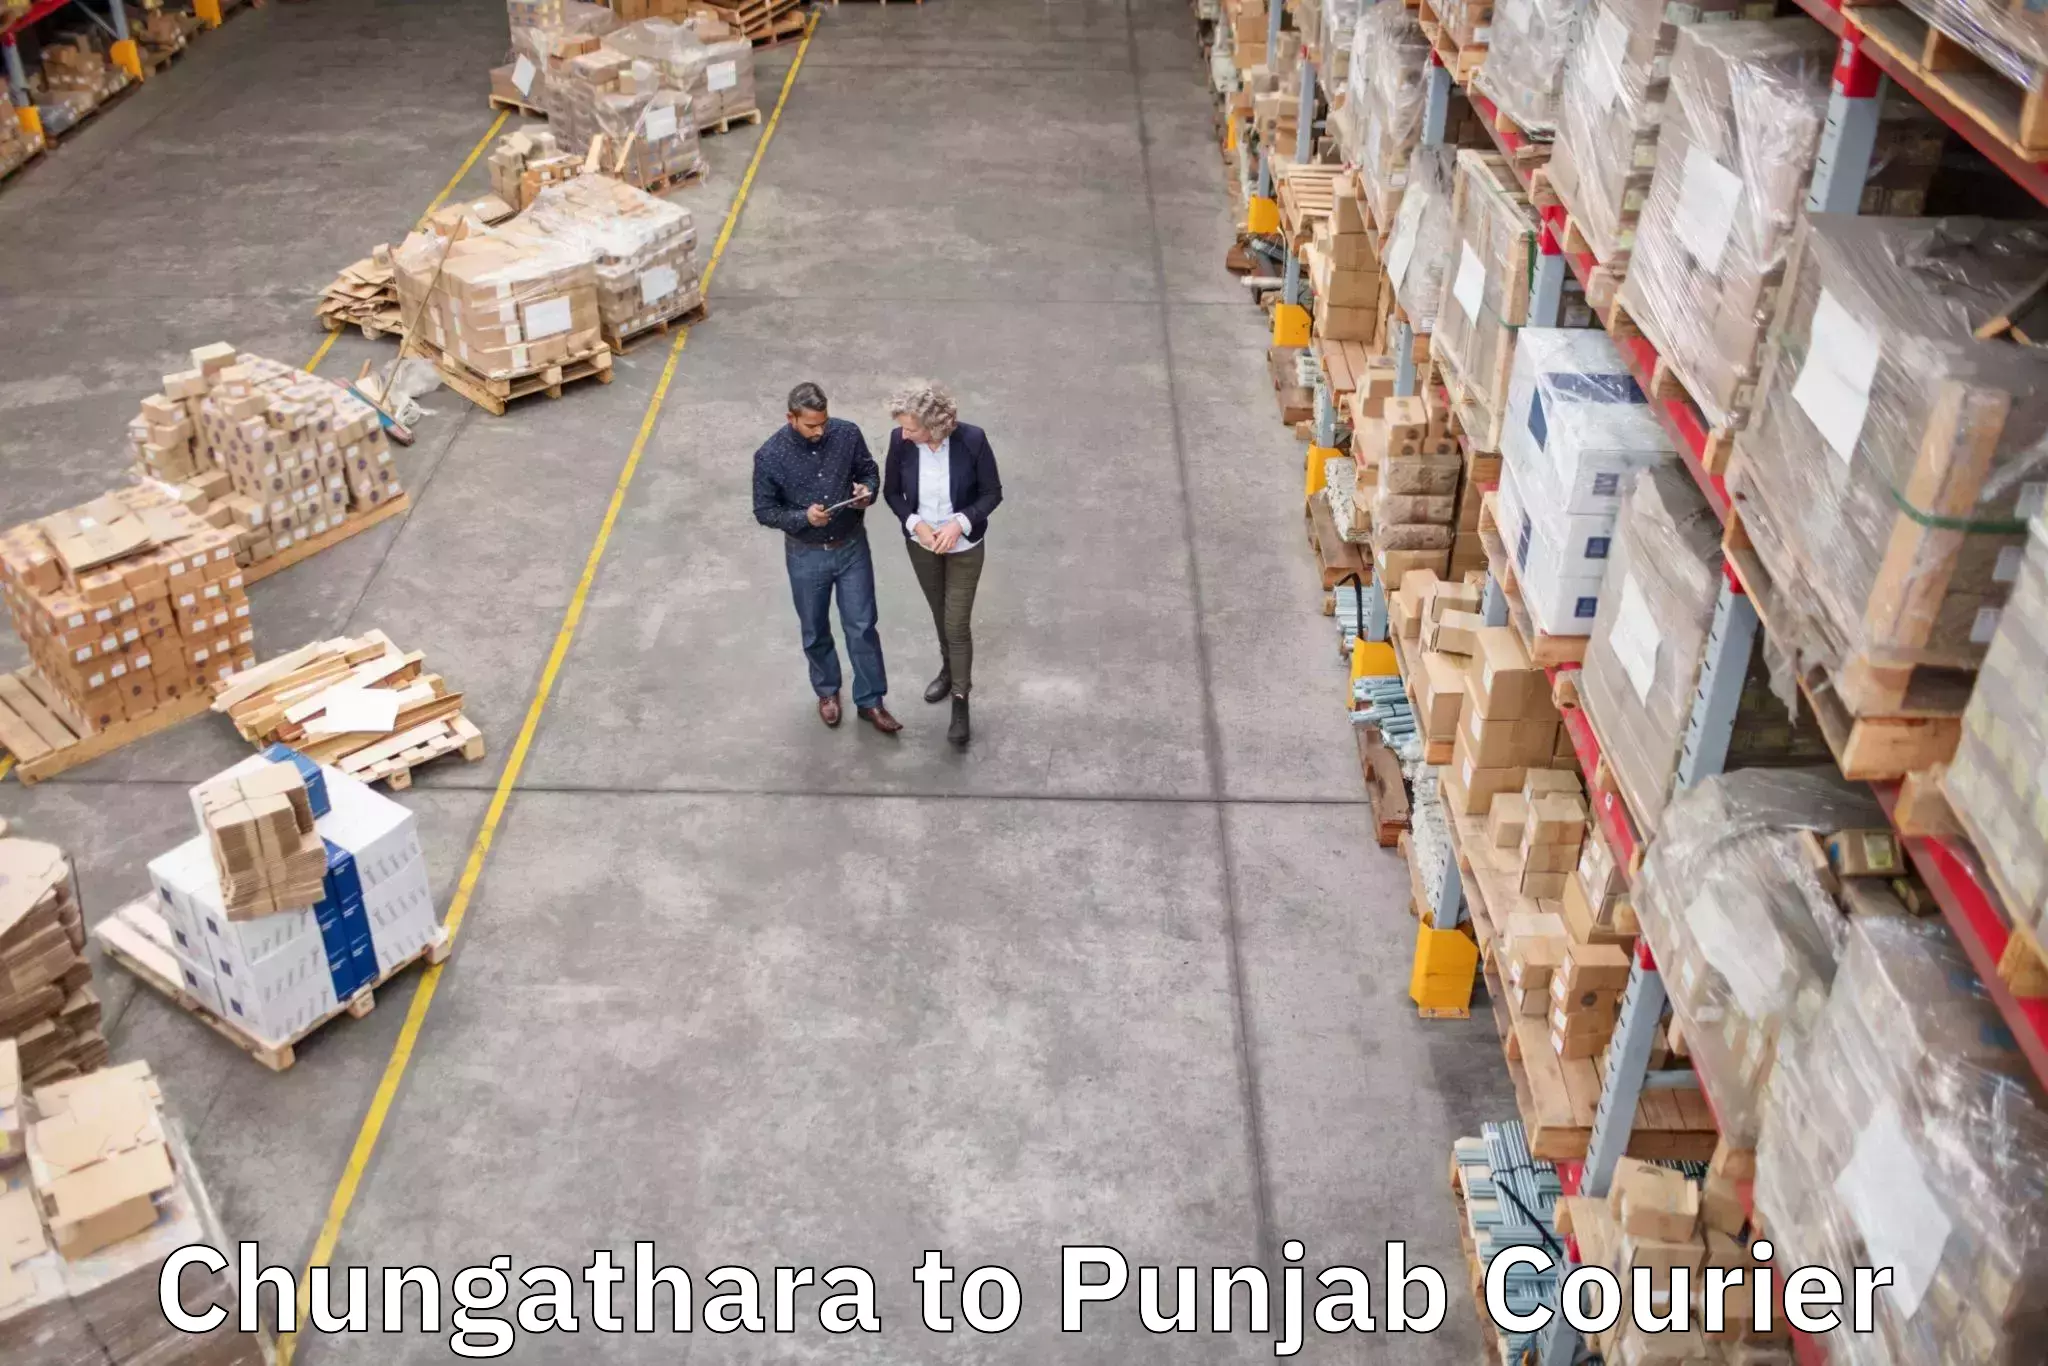 Baggage shipping rates calculator Chungathara to Punjab